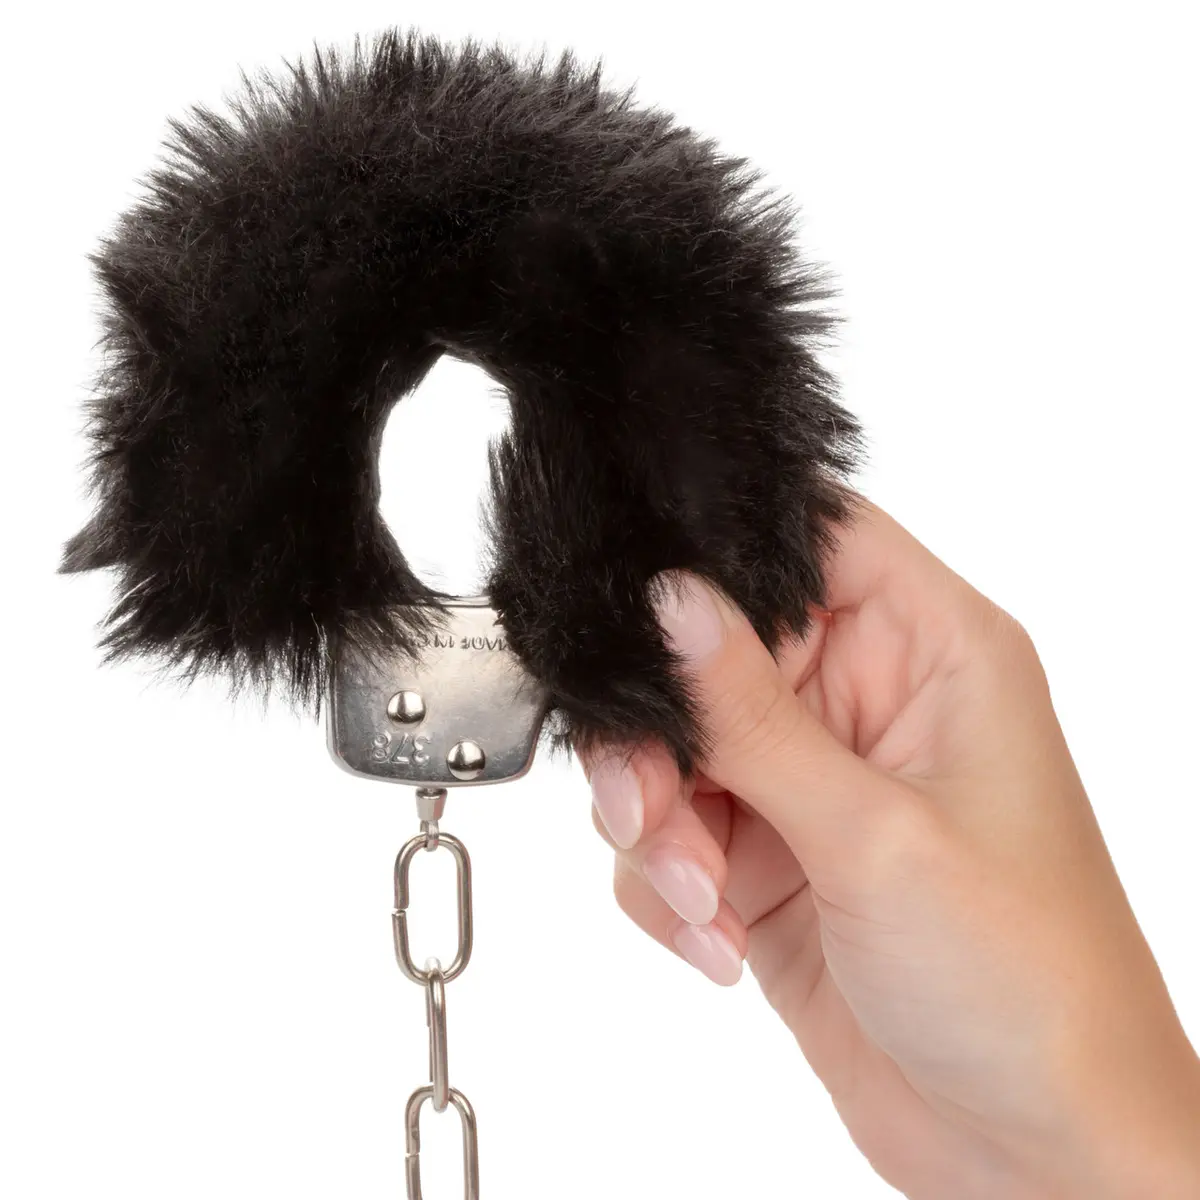 6. Calexotics - Ultra Fluffy Furry Handcuffs - Black